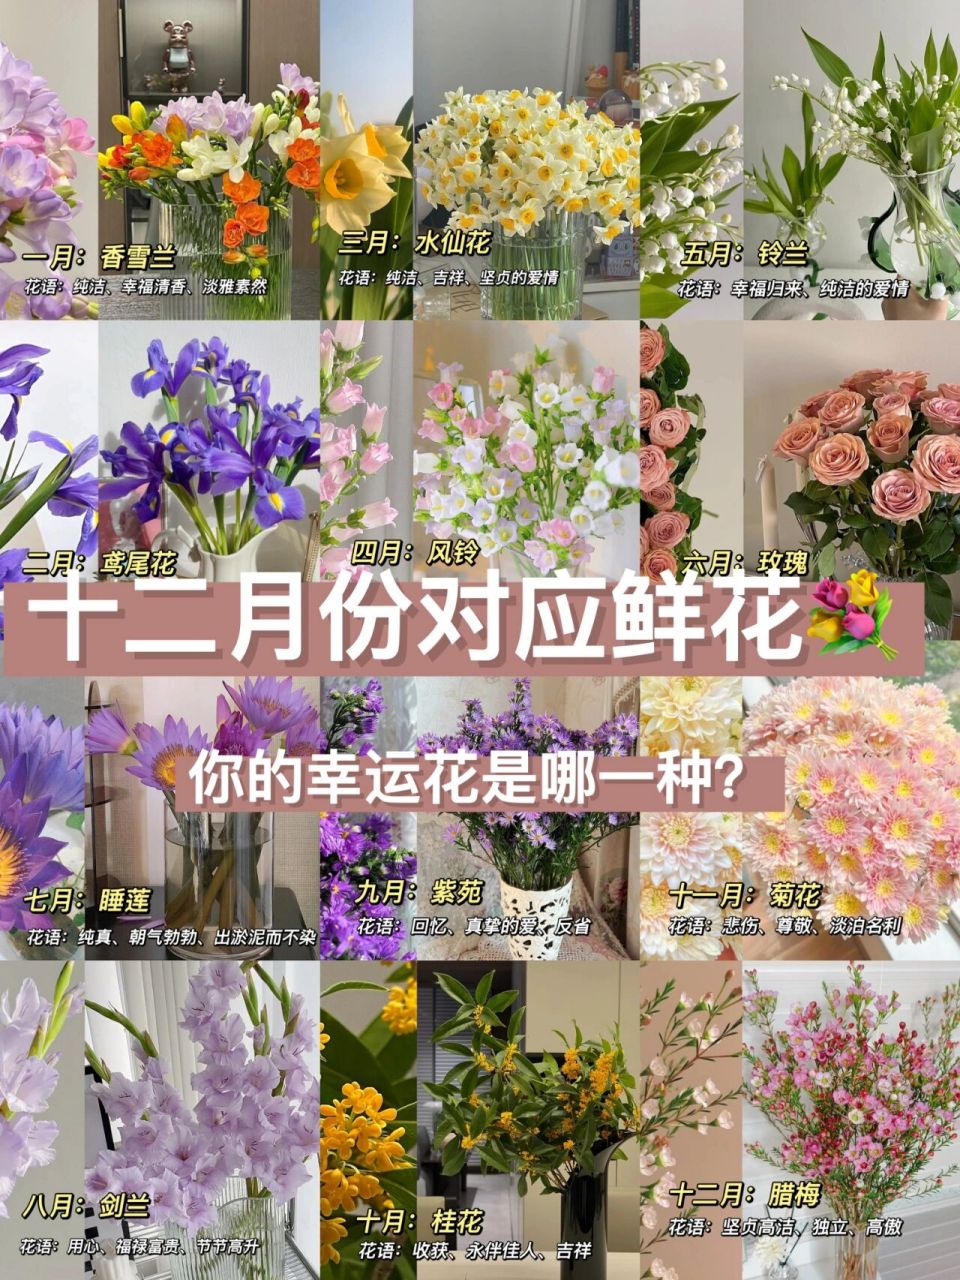 生日月份对应鲜花,送花选对不选贵 人生有四季,四季有繁华 给花友们